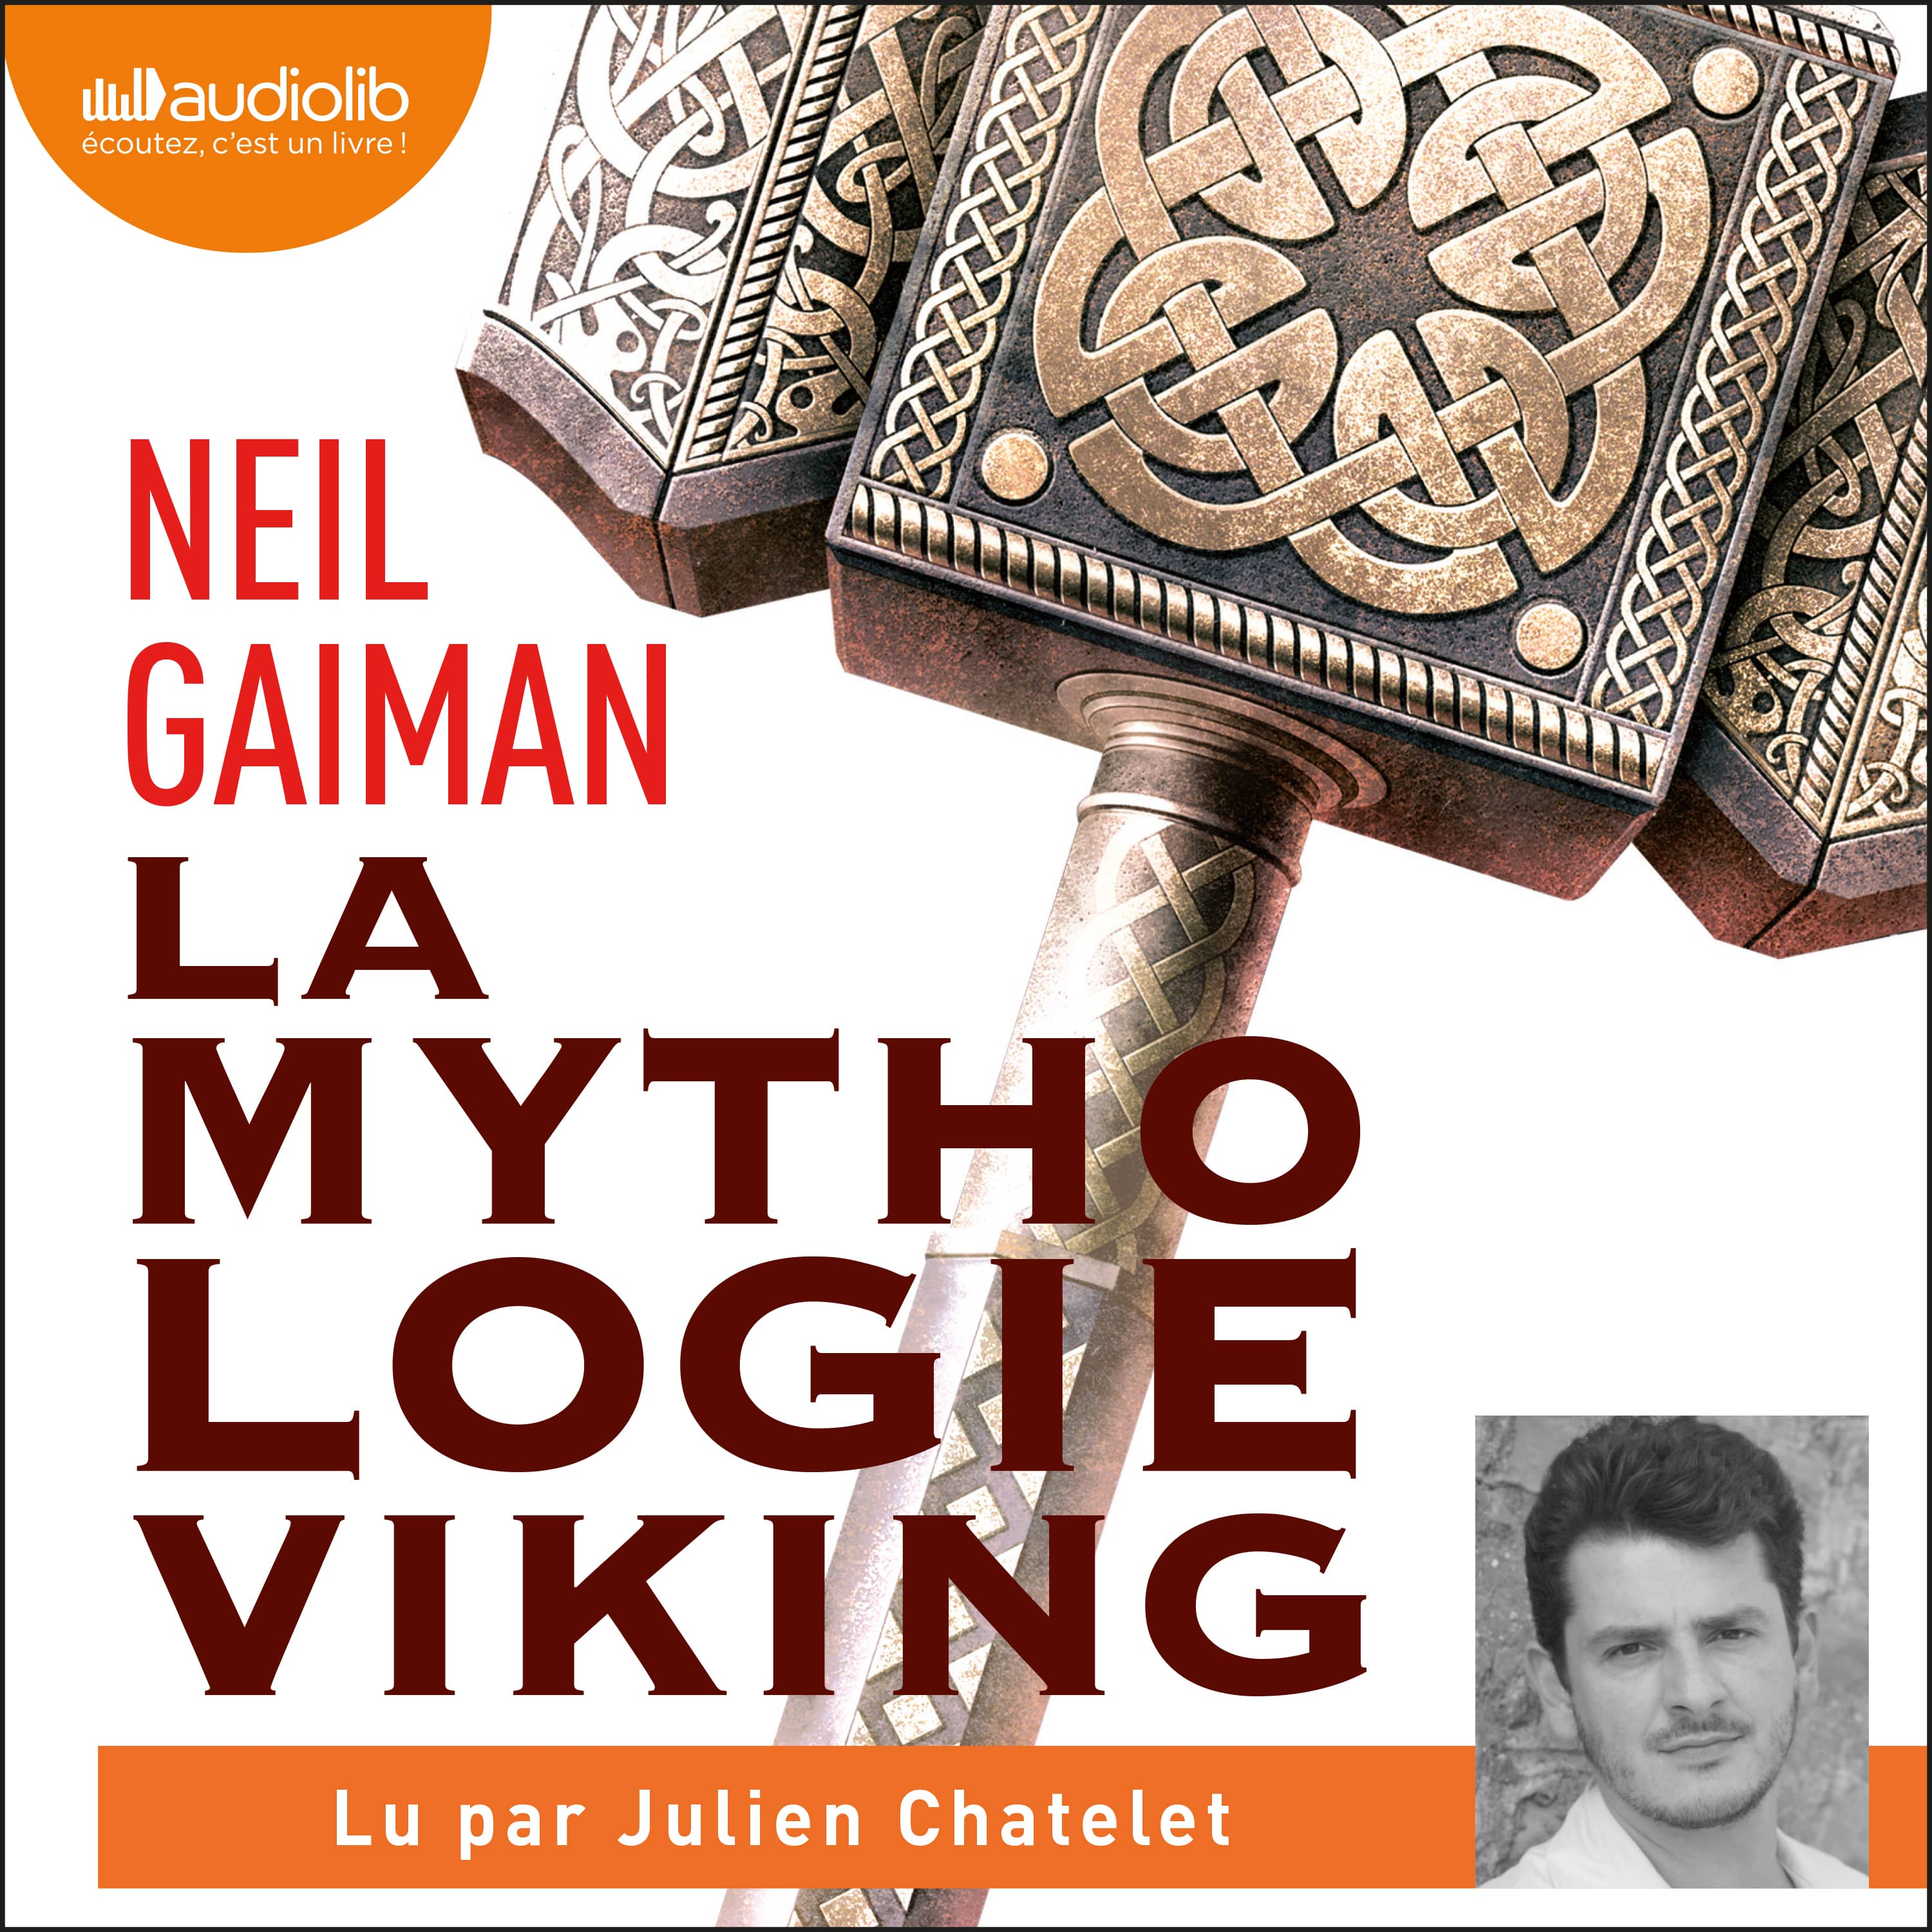 Couverture du livre audio La Mythologie viking De Neil Gaiman 